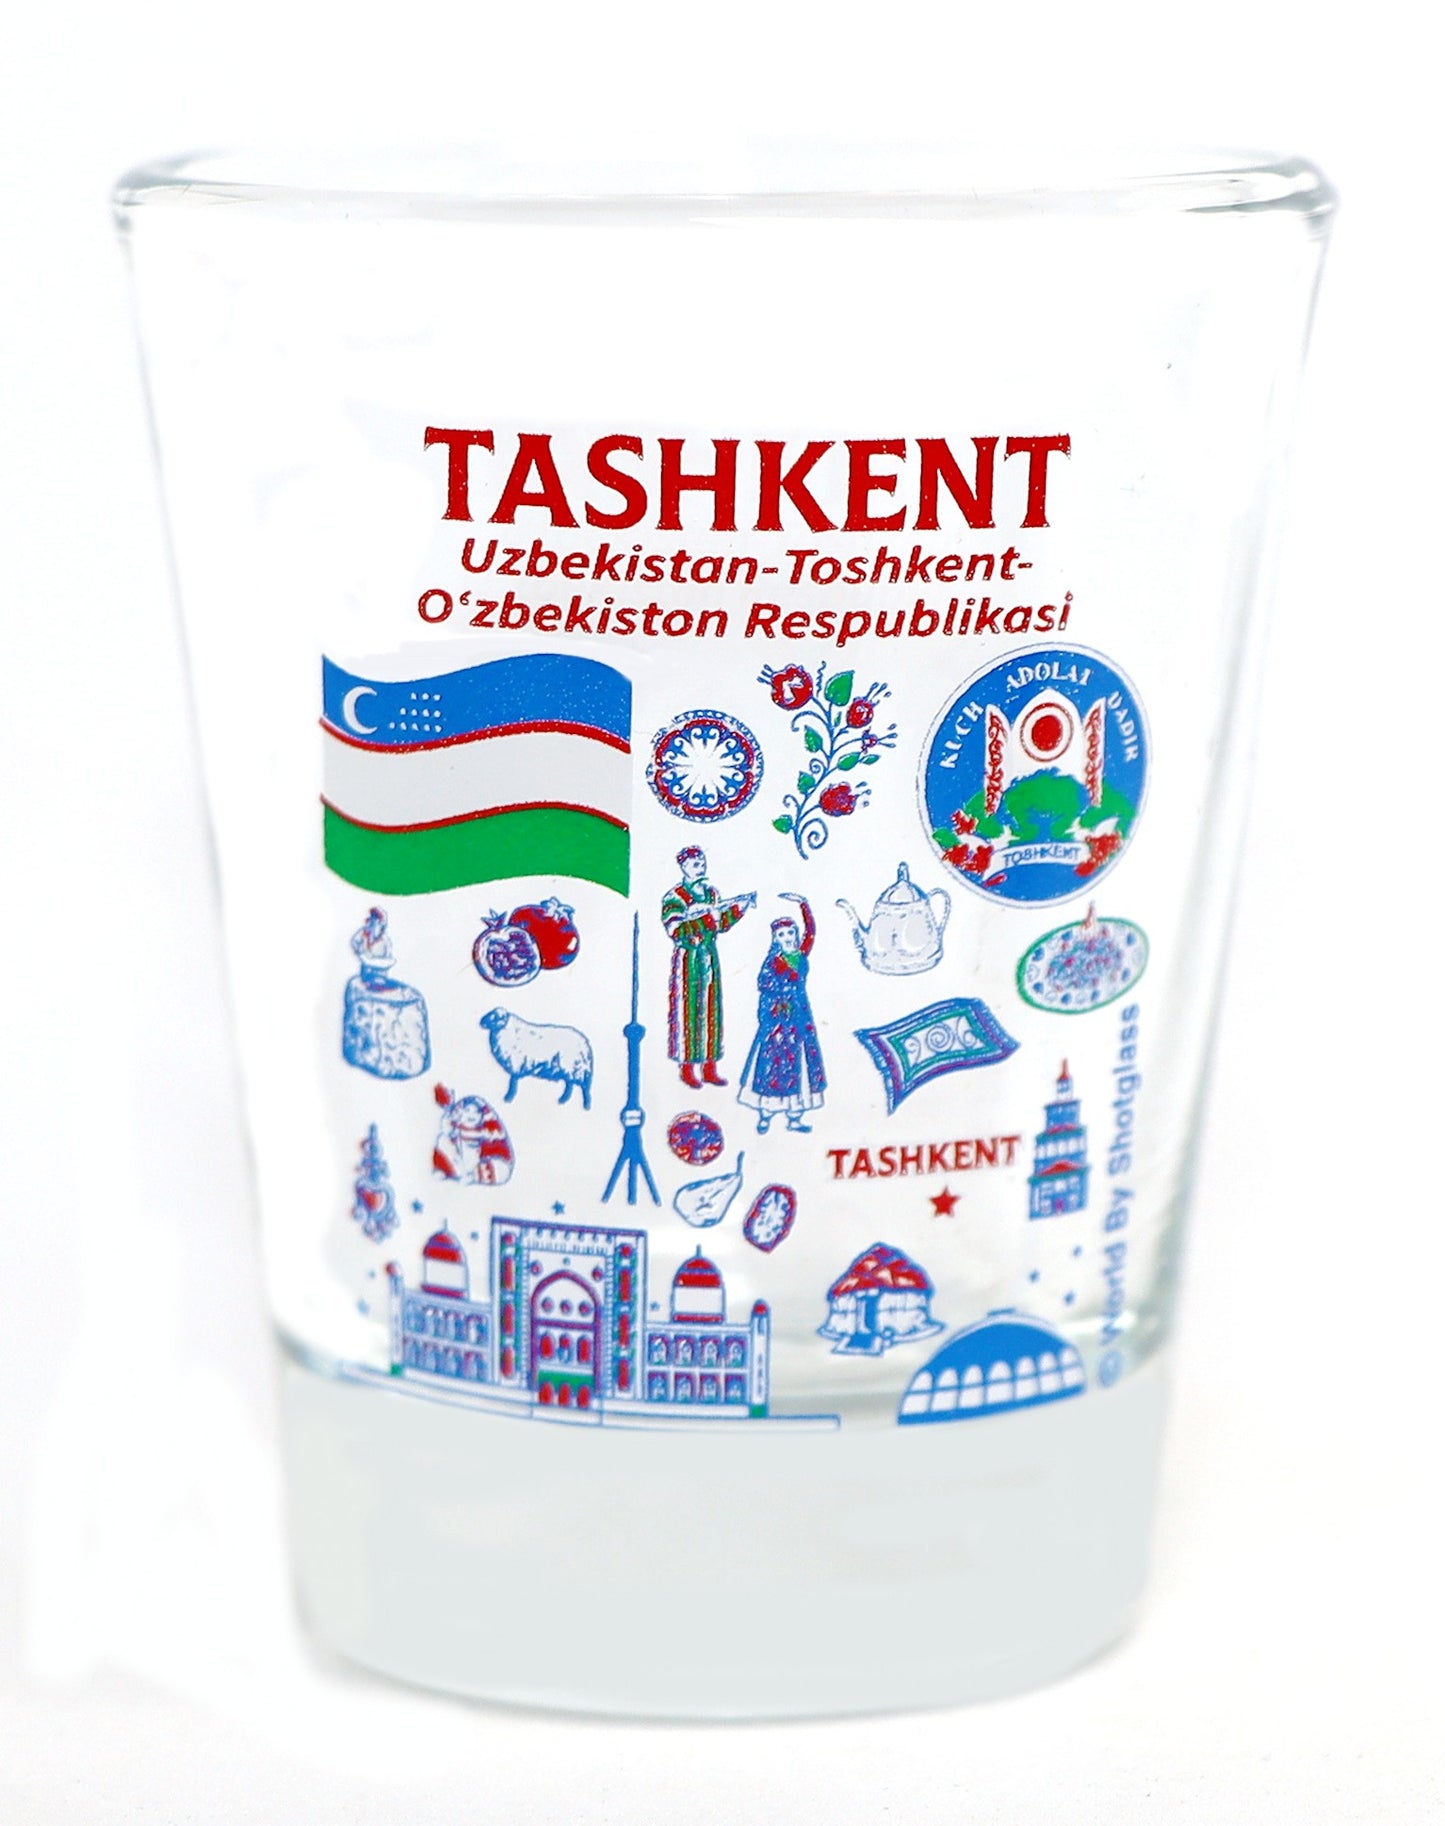 Tashkent Uzbekistan Landmarks and Icons Collage Shot Glass